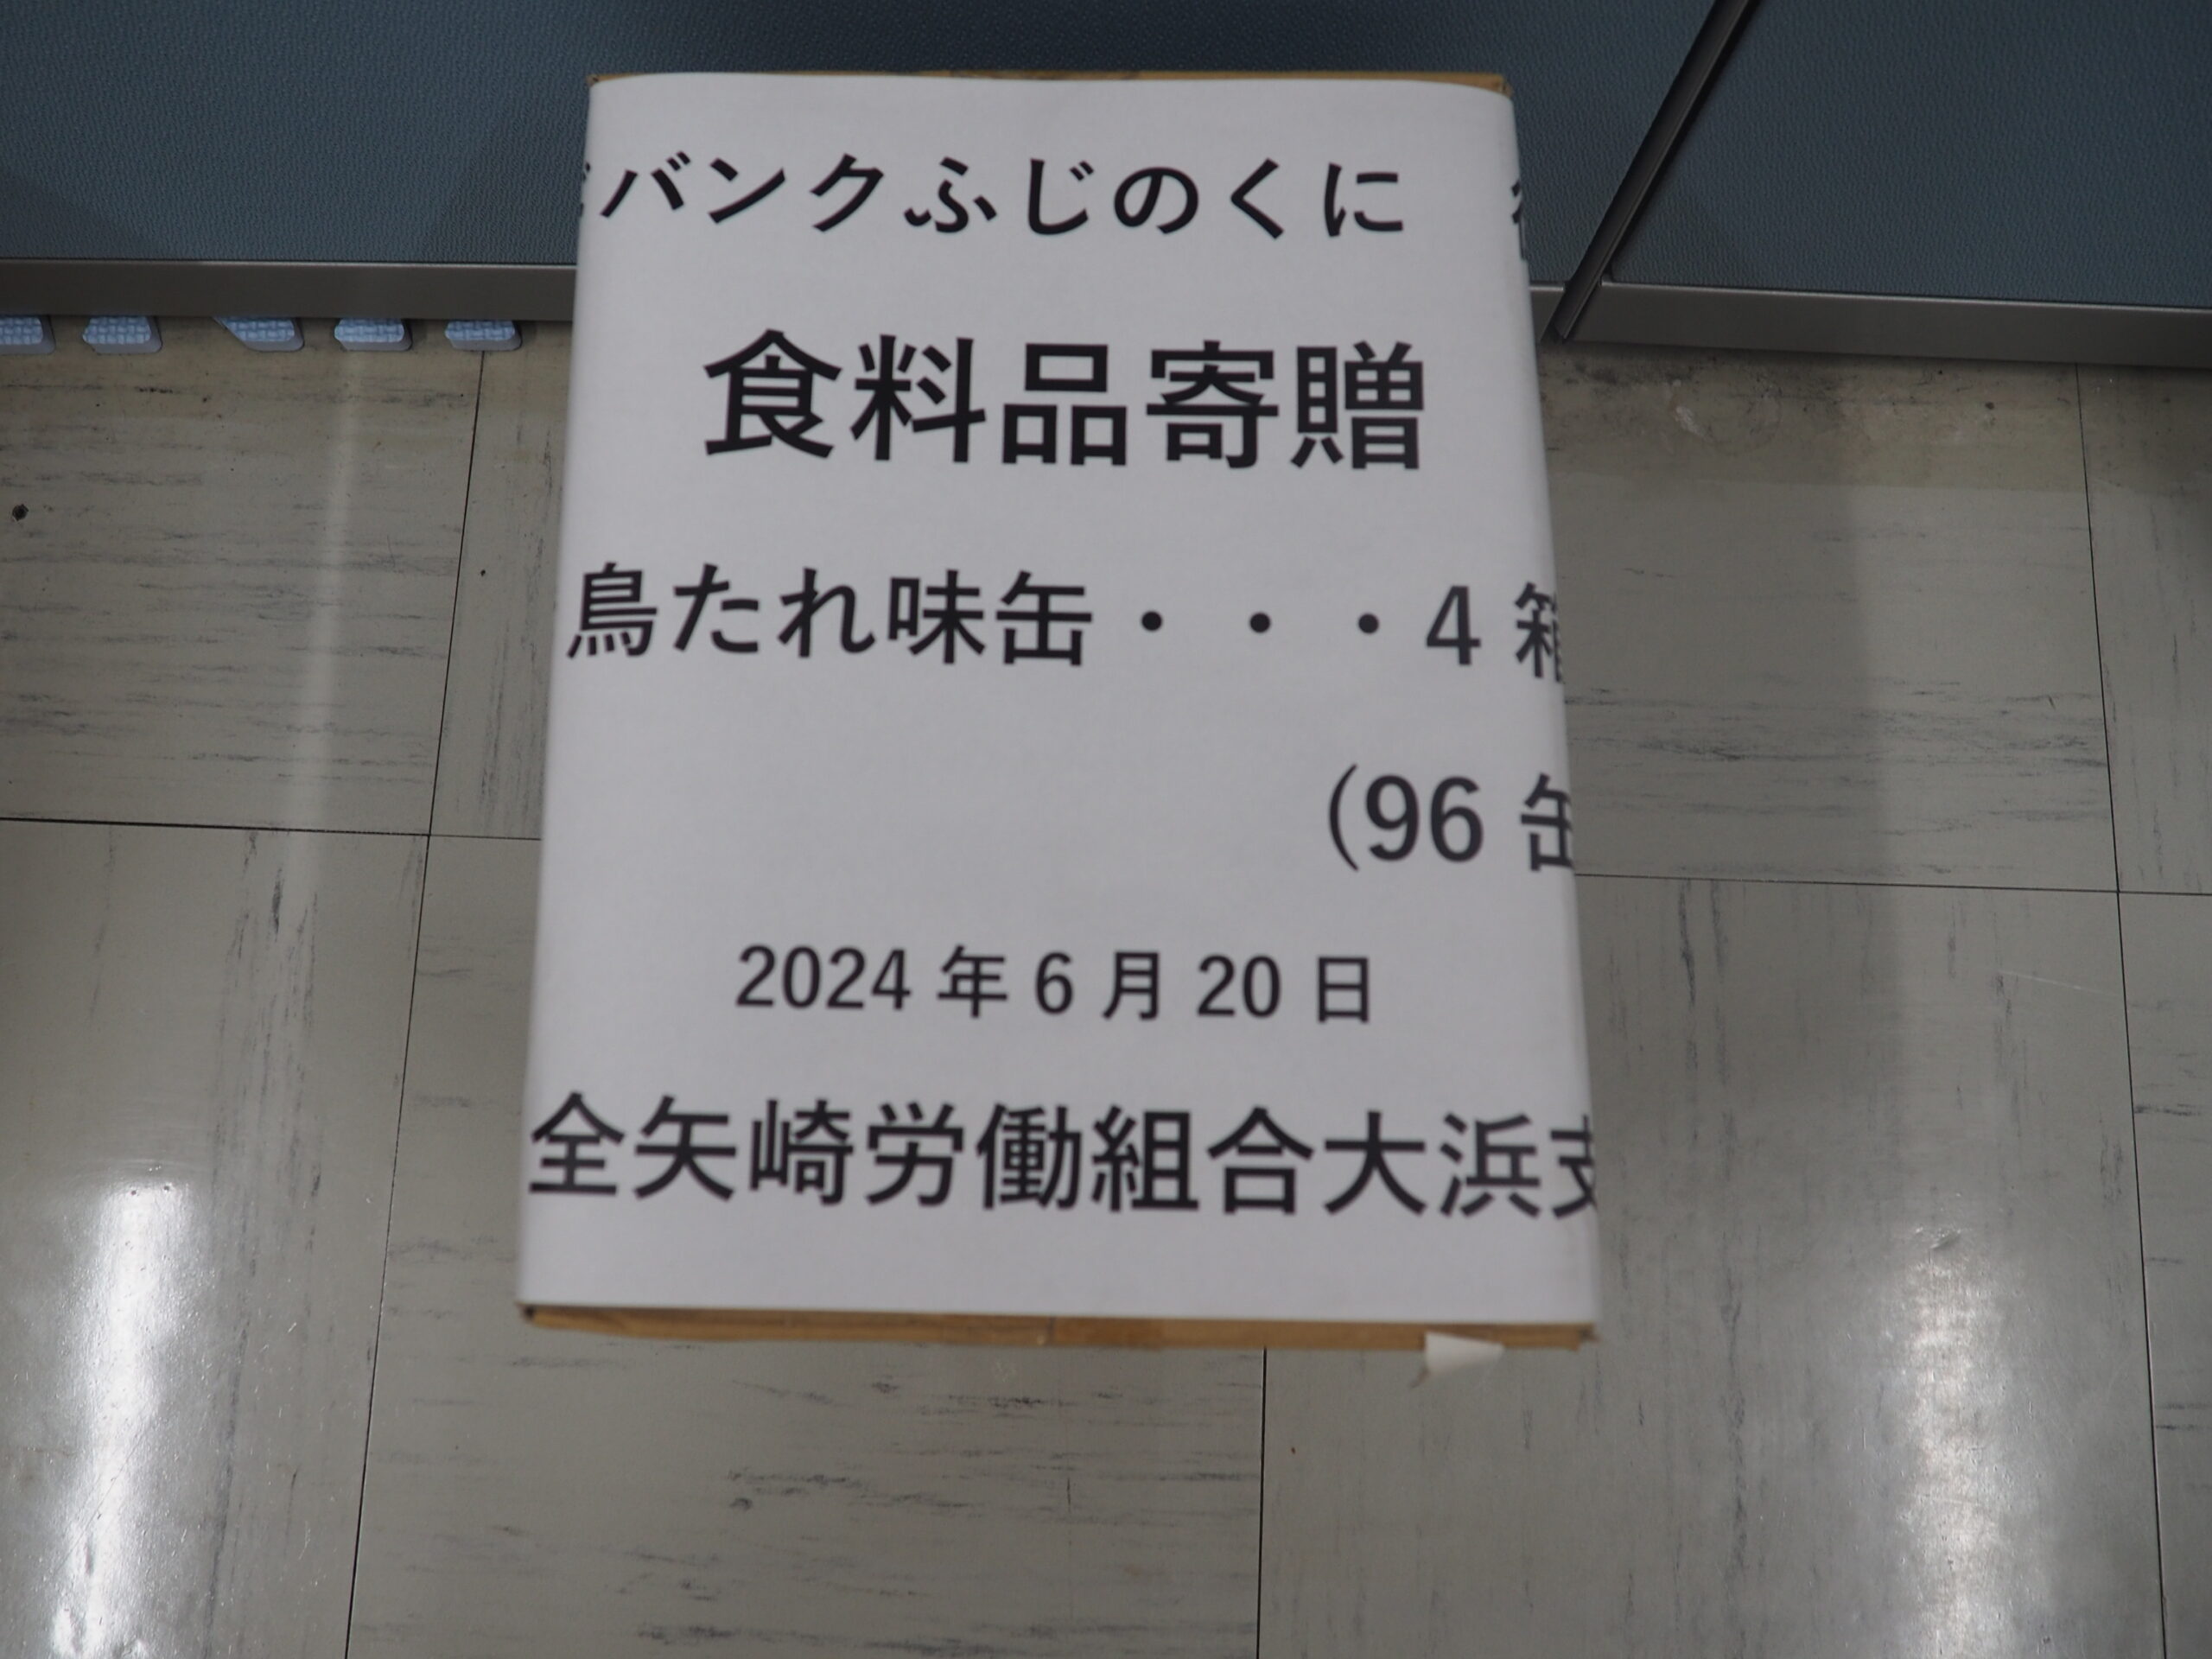 全矢崎労働組合大浜支部様から食品を提供いただきました。